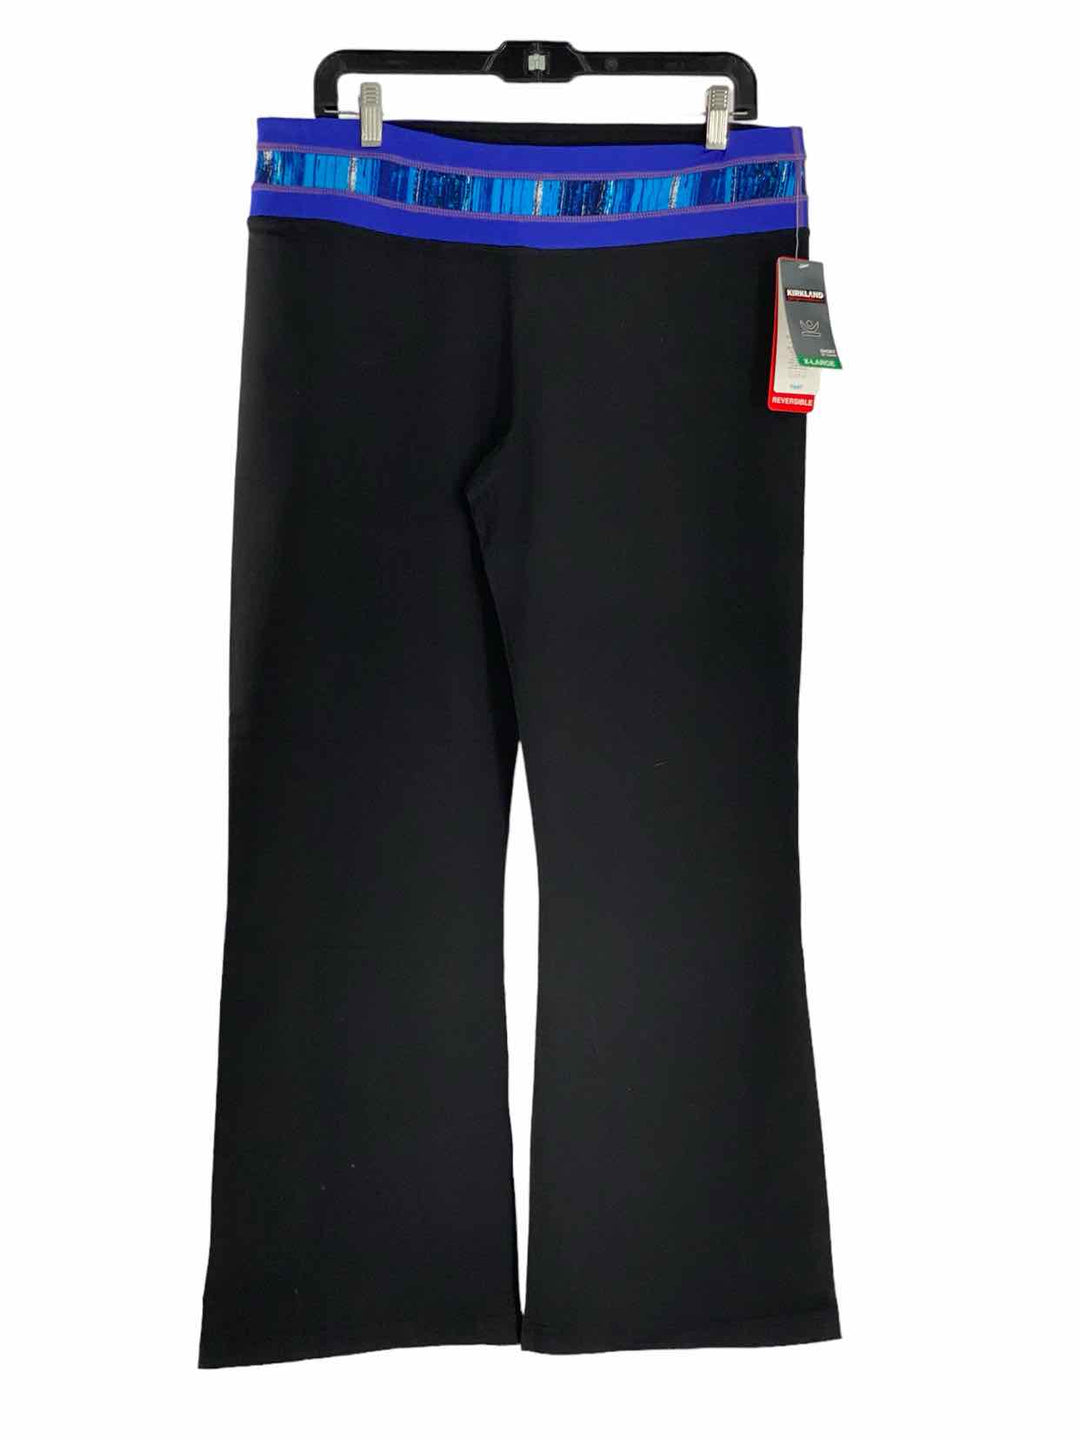 Kirkland Size XL Black Reversible NWT Athletic Pants